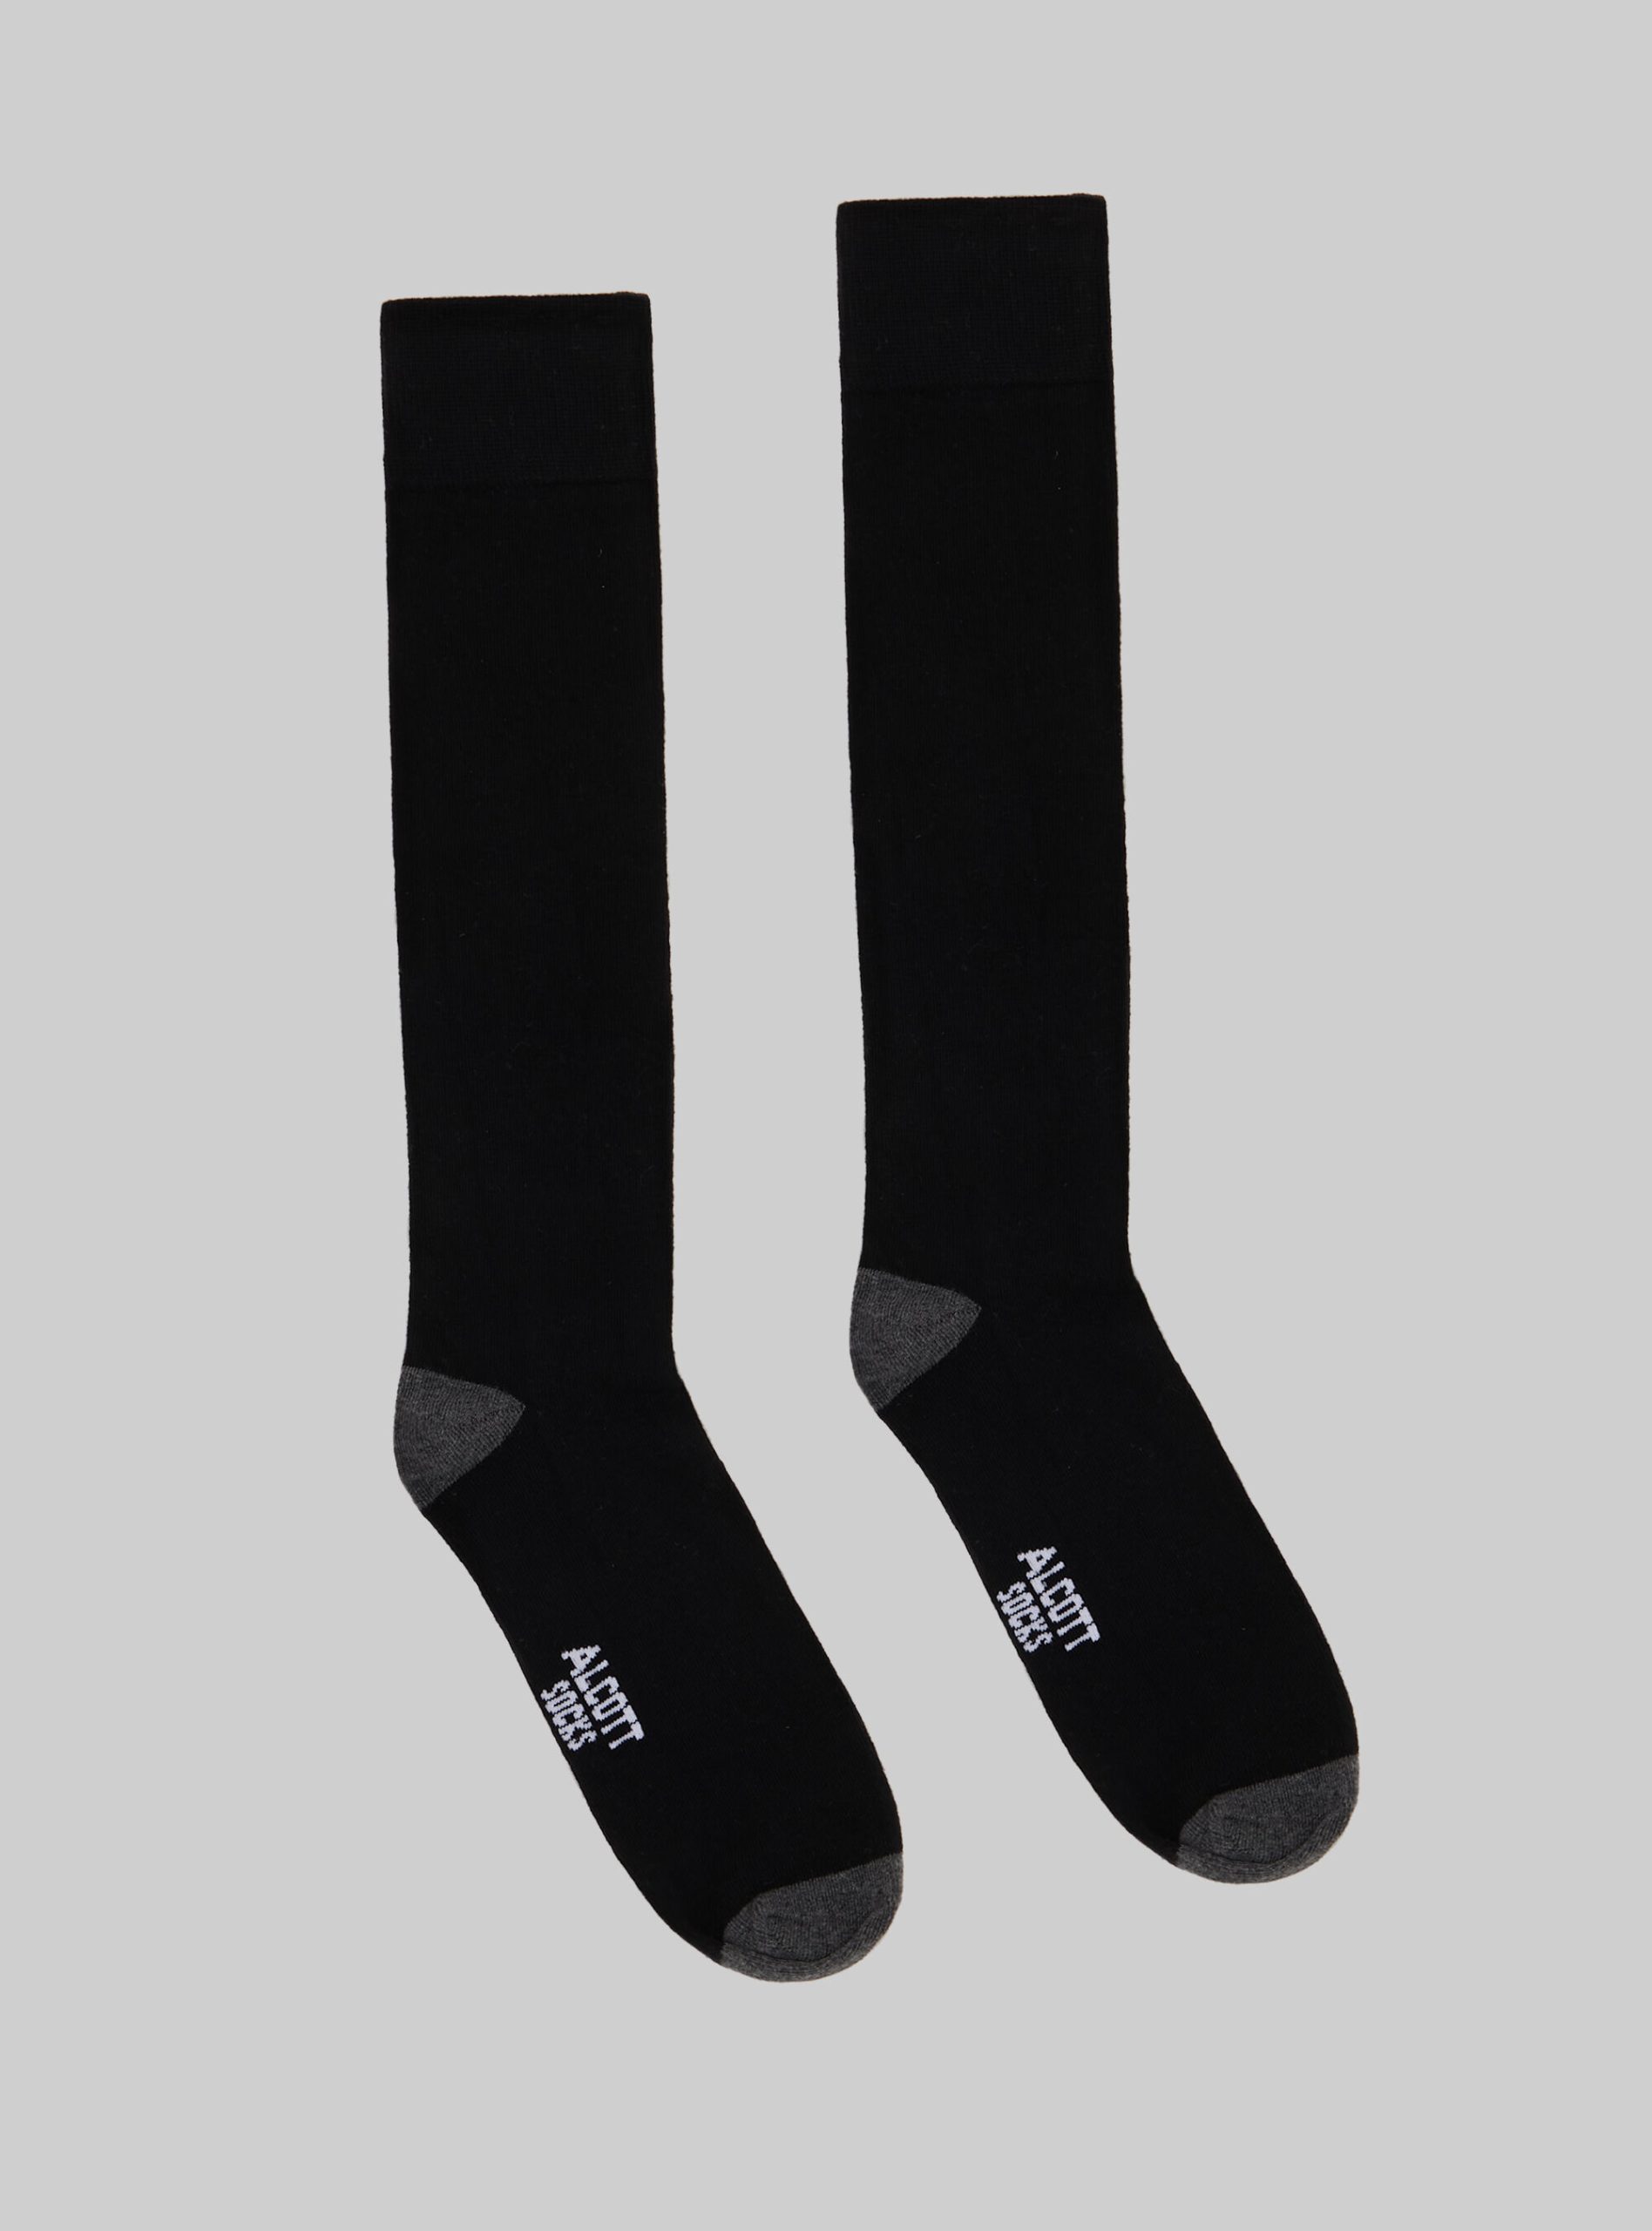 Mgy1 Grey Mel Dark Socken Alcott Satz Von 3 Paar Gemusterten Socken Männer Verkauf – 2